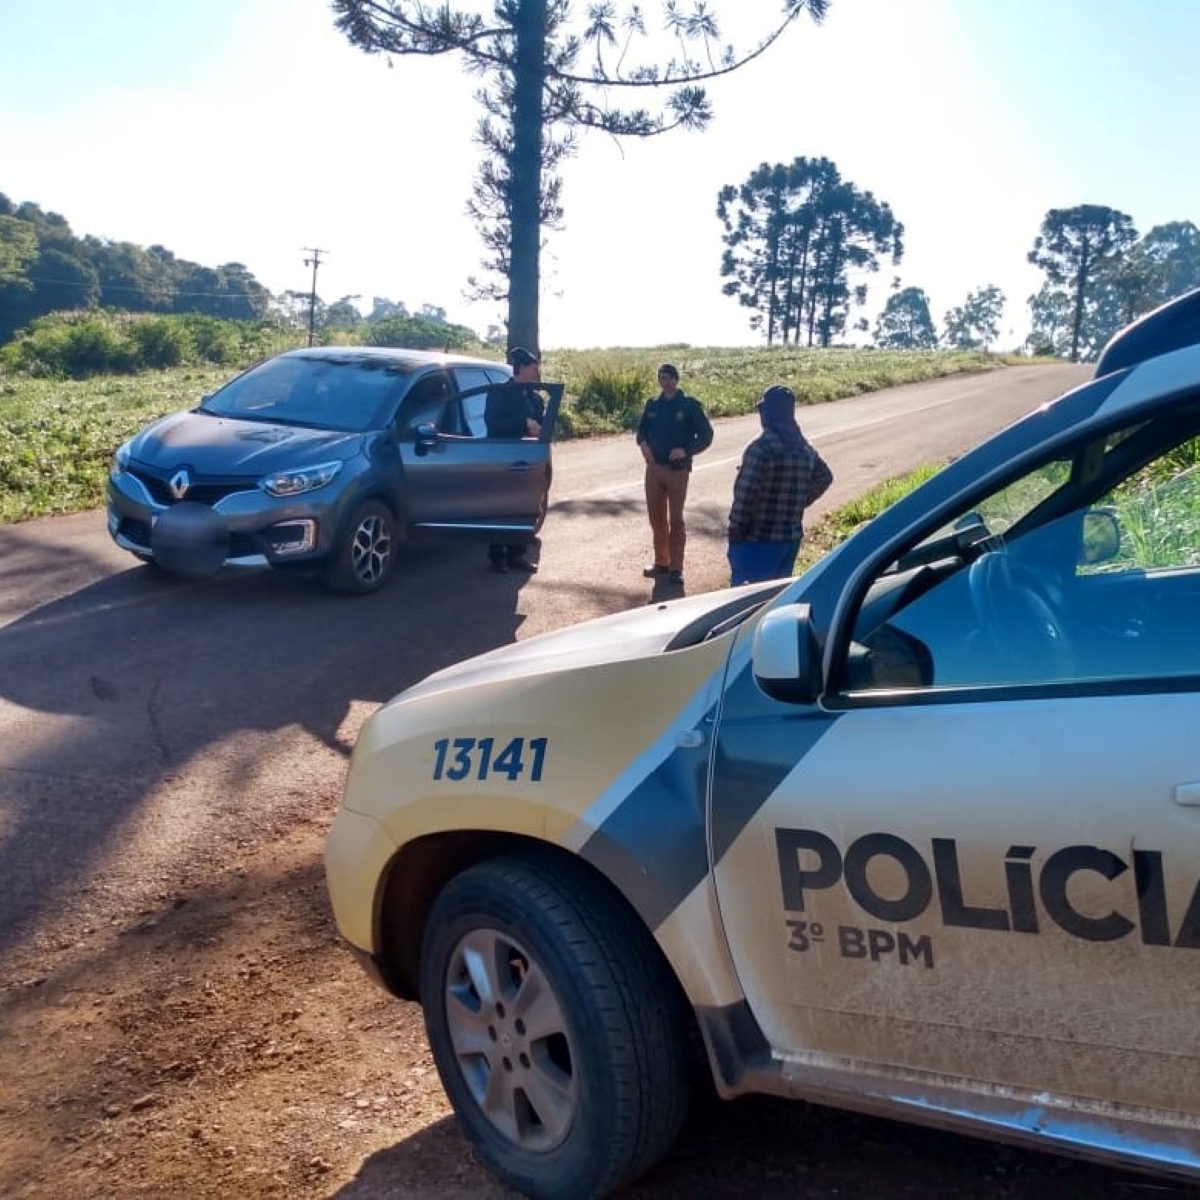  Polícia recupera cerca de R$ 210 mil após roubo em agências bancárias em Sulina 